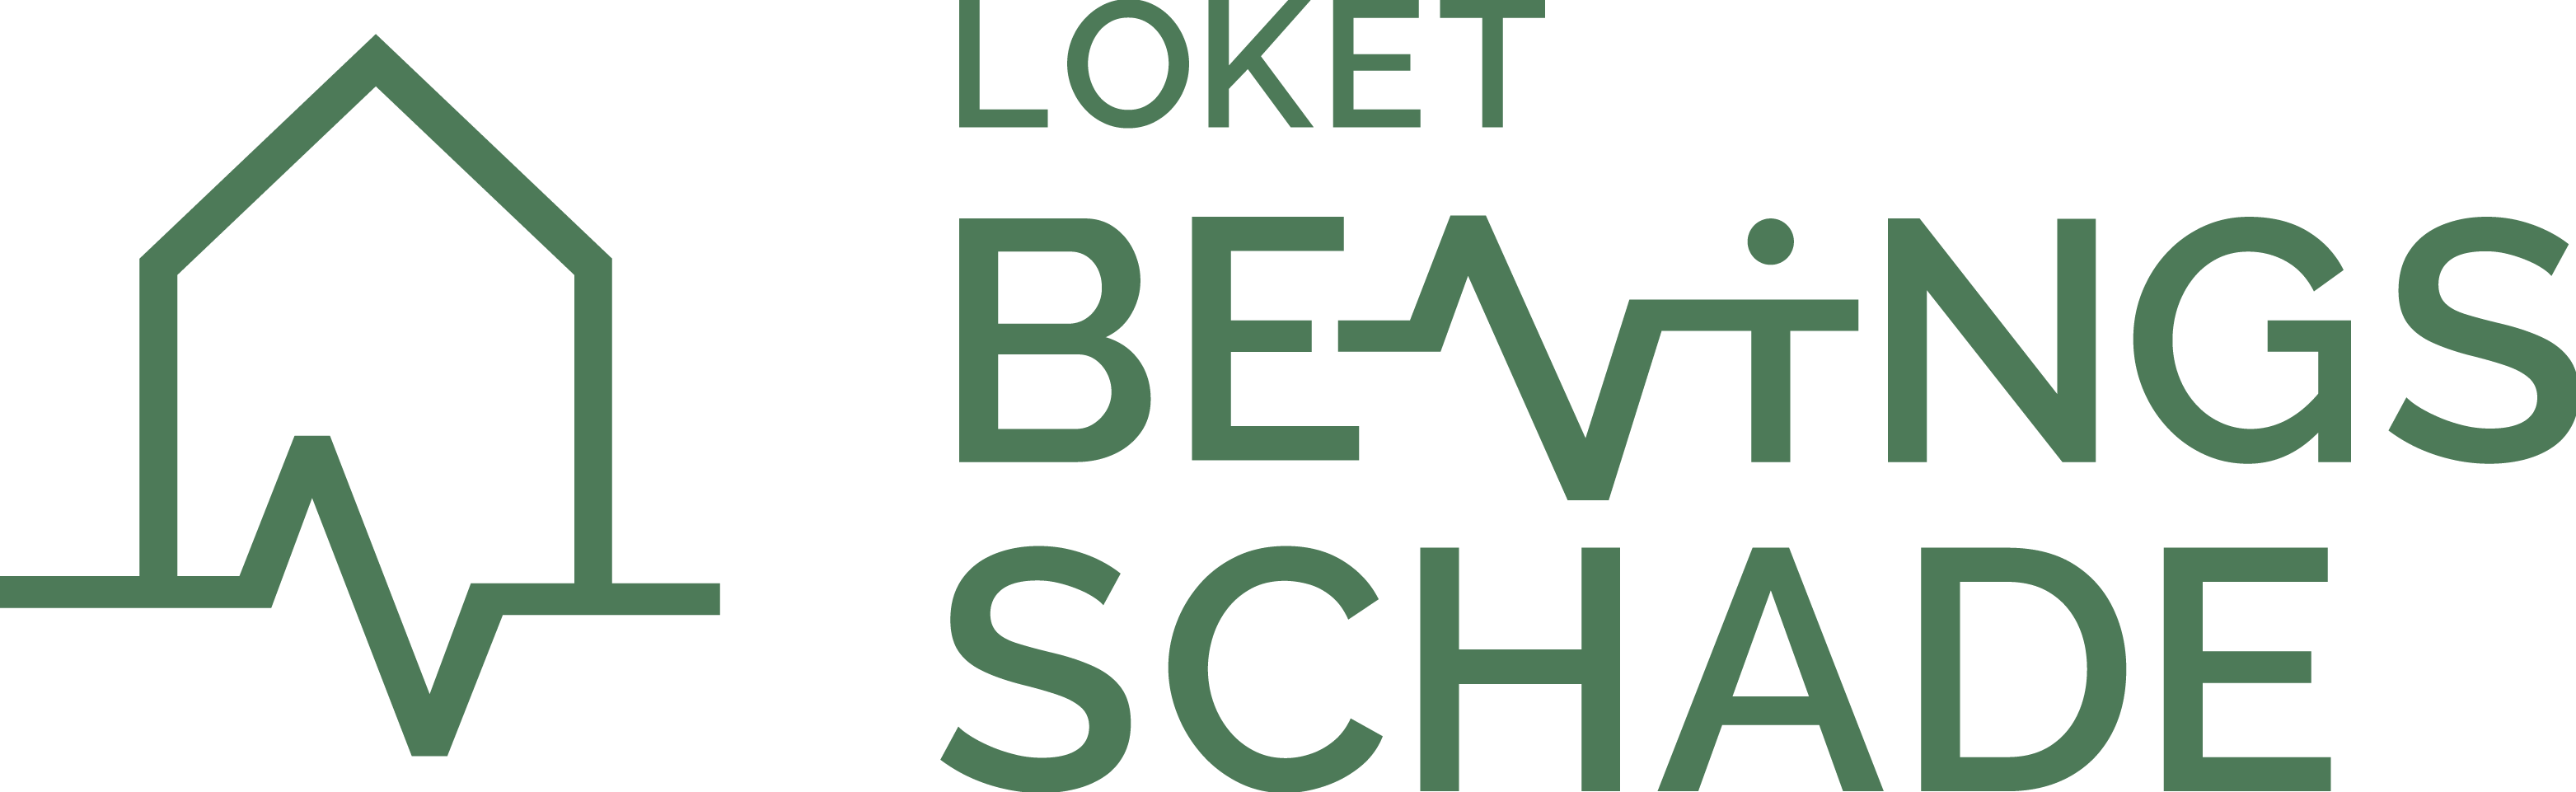 Loket Bevingsschade logo